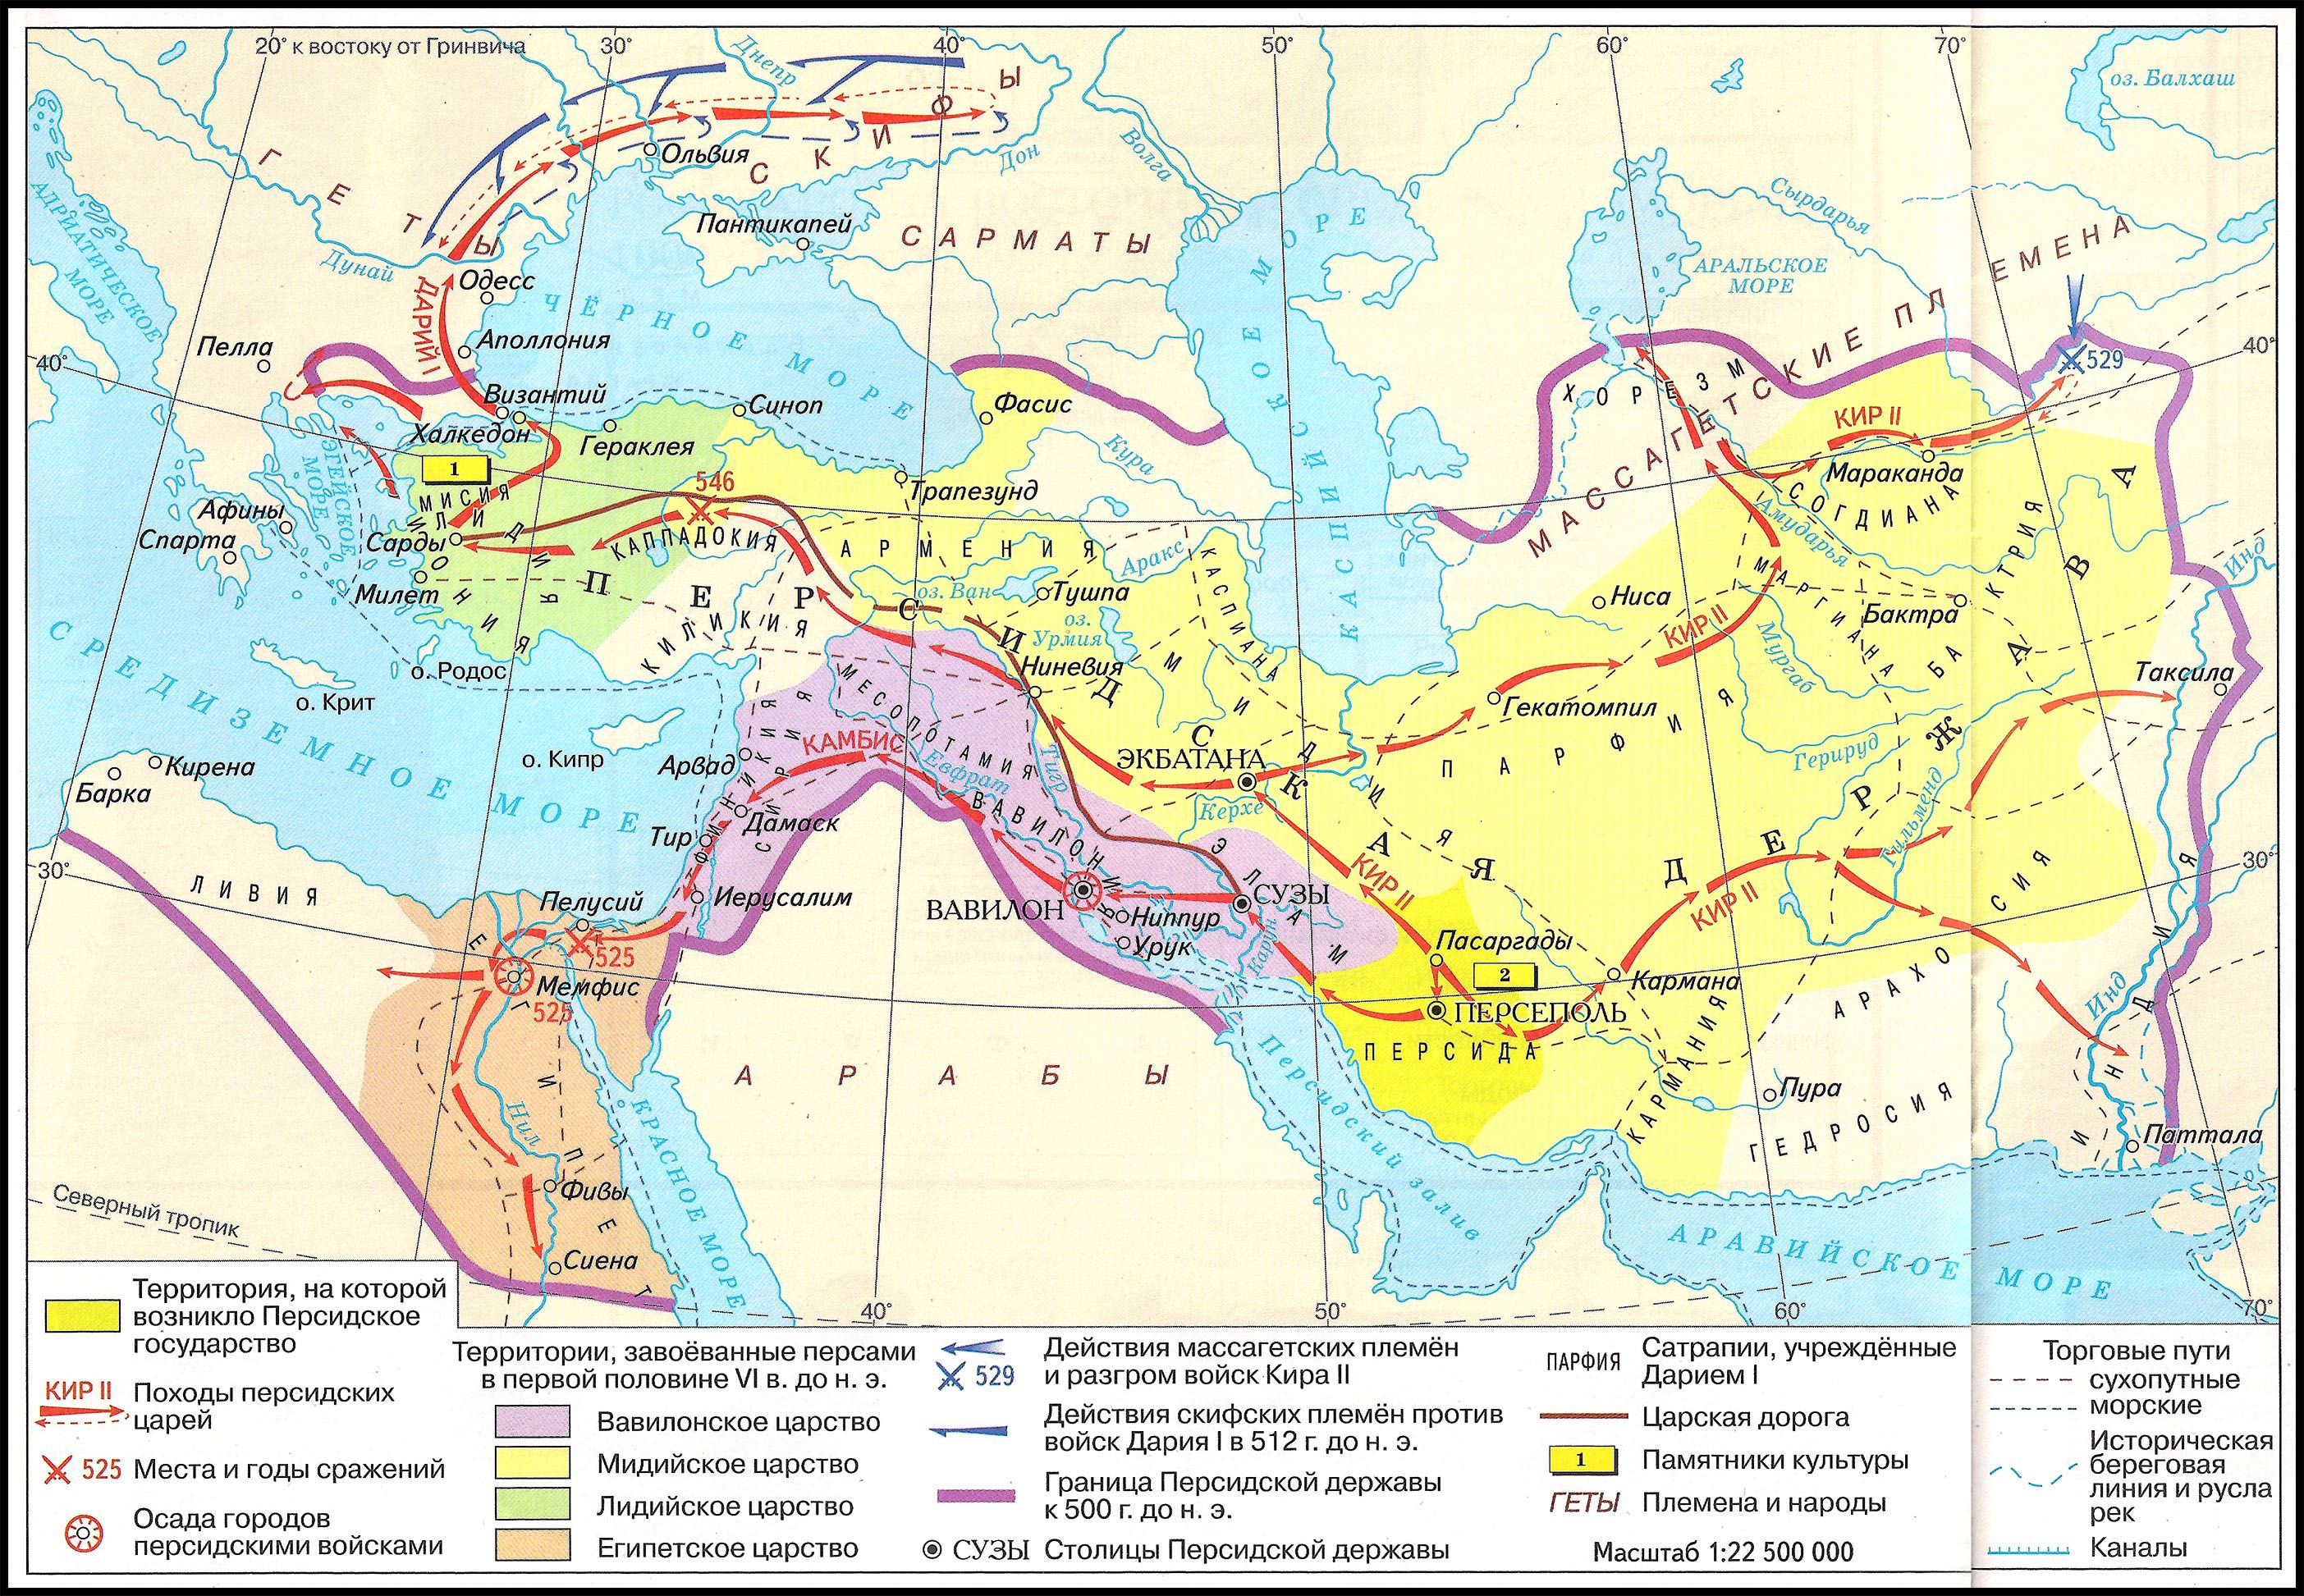 Царская дорога относится к древней персии. Персидская держава 550-330 гг до н э.